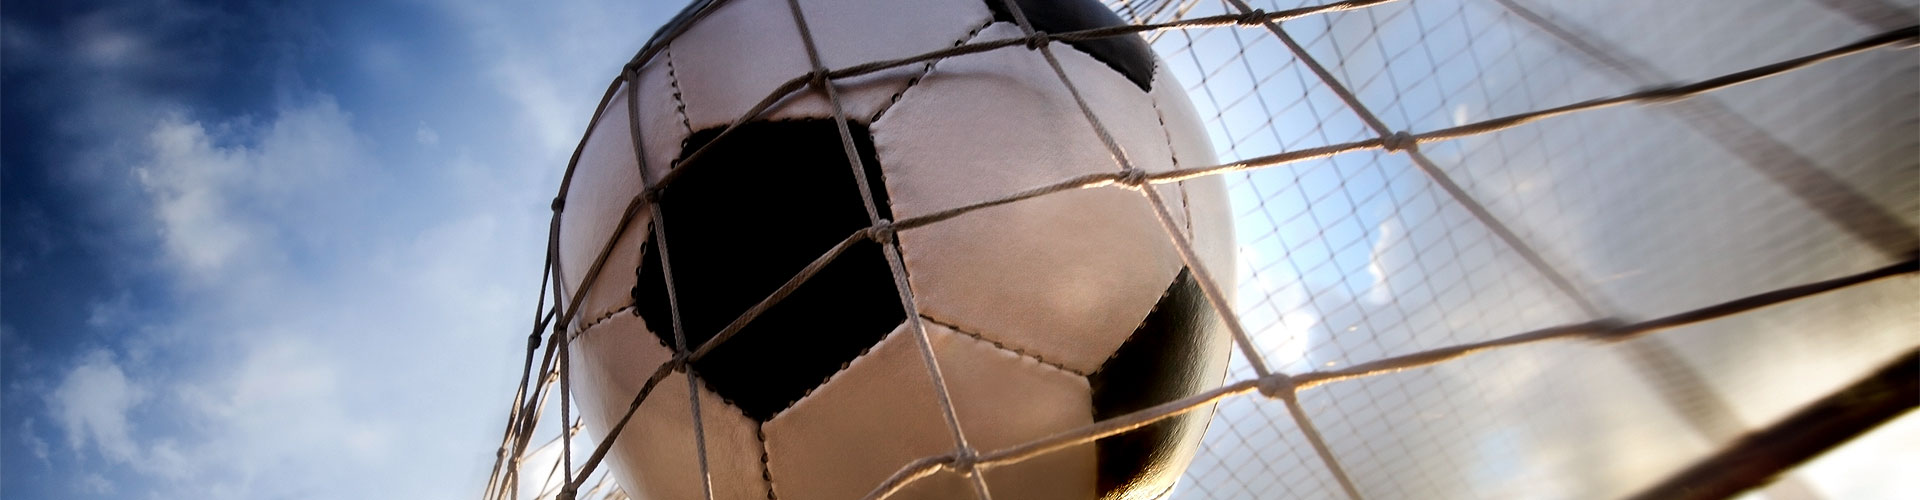 Ver la Eurocopa 2020 de fútbol en vivo en Los Baladejos